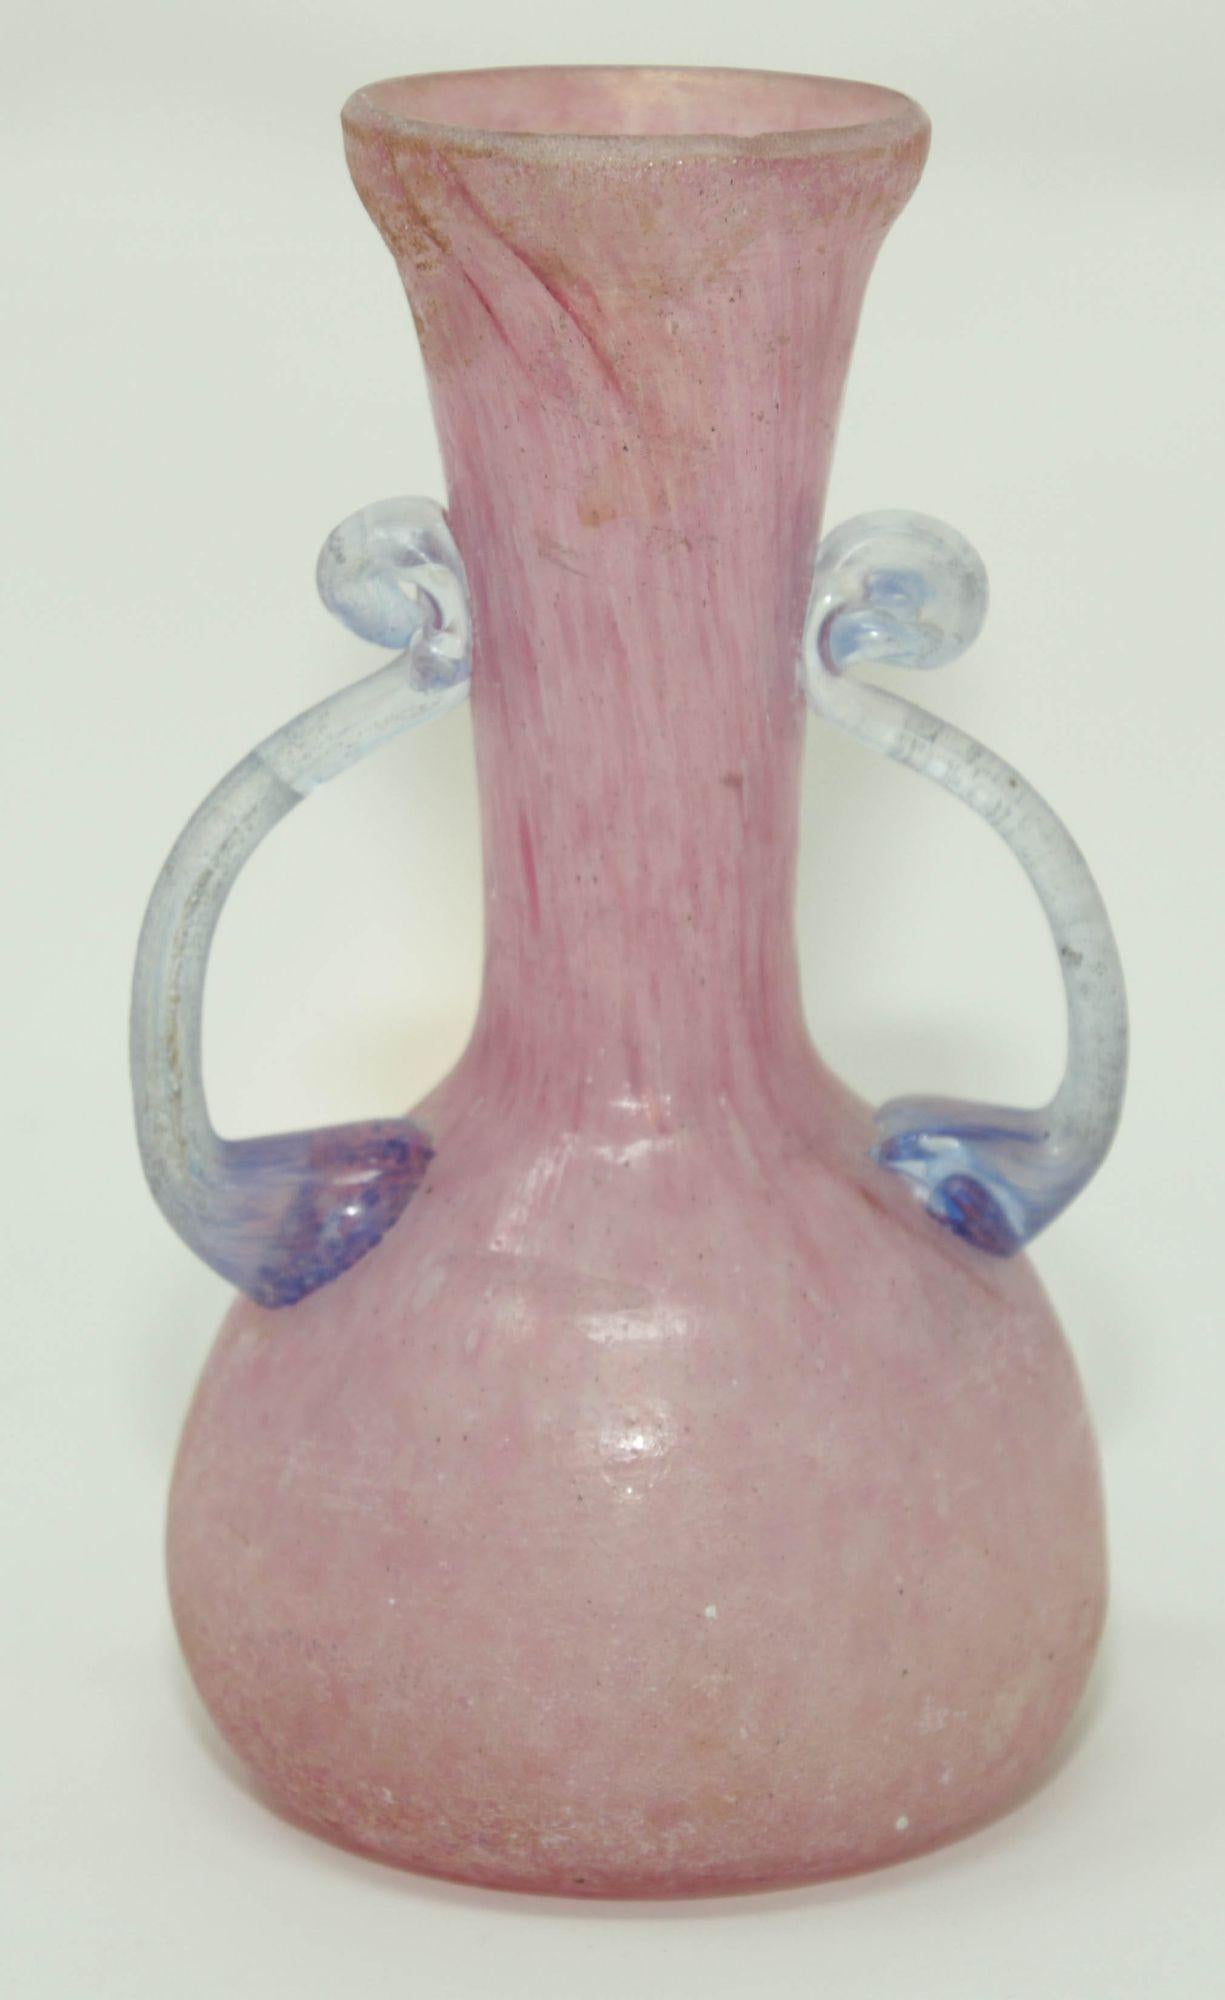 Verre d'art rose et bleu de Murano Seguso Vetri d'Arte Murano, Italie, années 1960
Petit vase de Murano en verre rose avec anses bleues, travail très délicat avec de beaux reflets irisés sur l'ensemble du vase et une belle transparence sur les